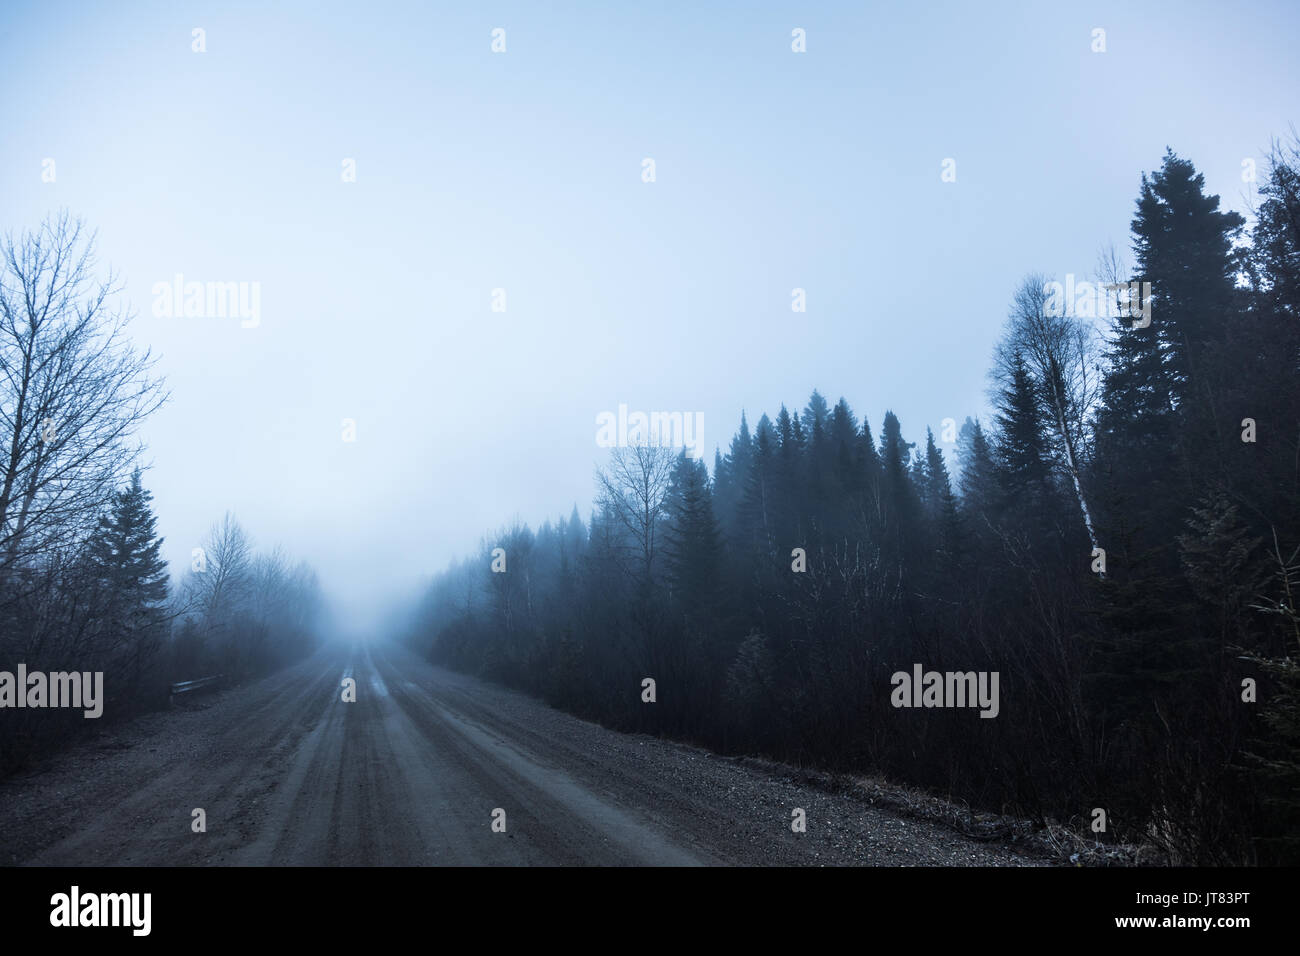 Brouillard fantasmagorique et mauvaise visibilité sur une route rurale en forêt durant l'hiver Banque D'Images